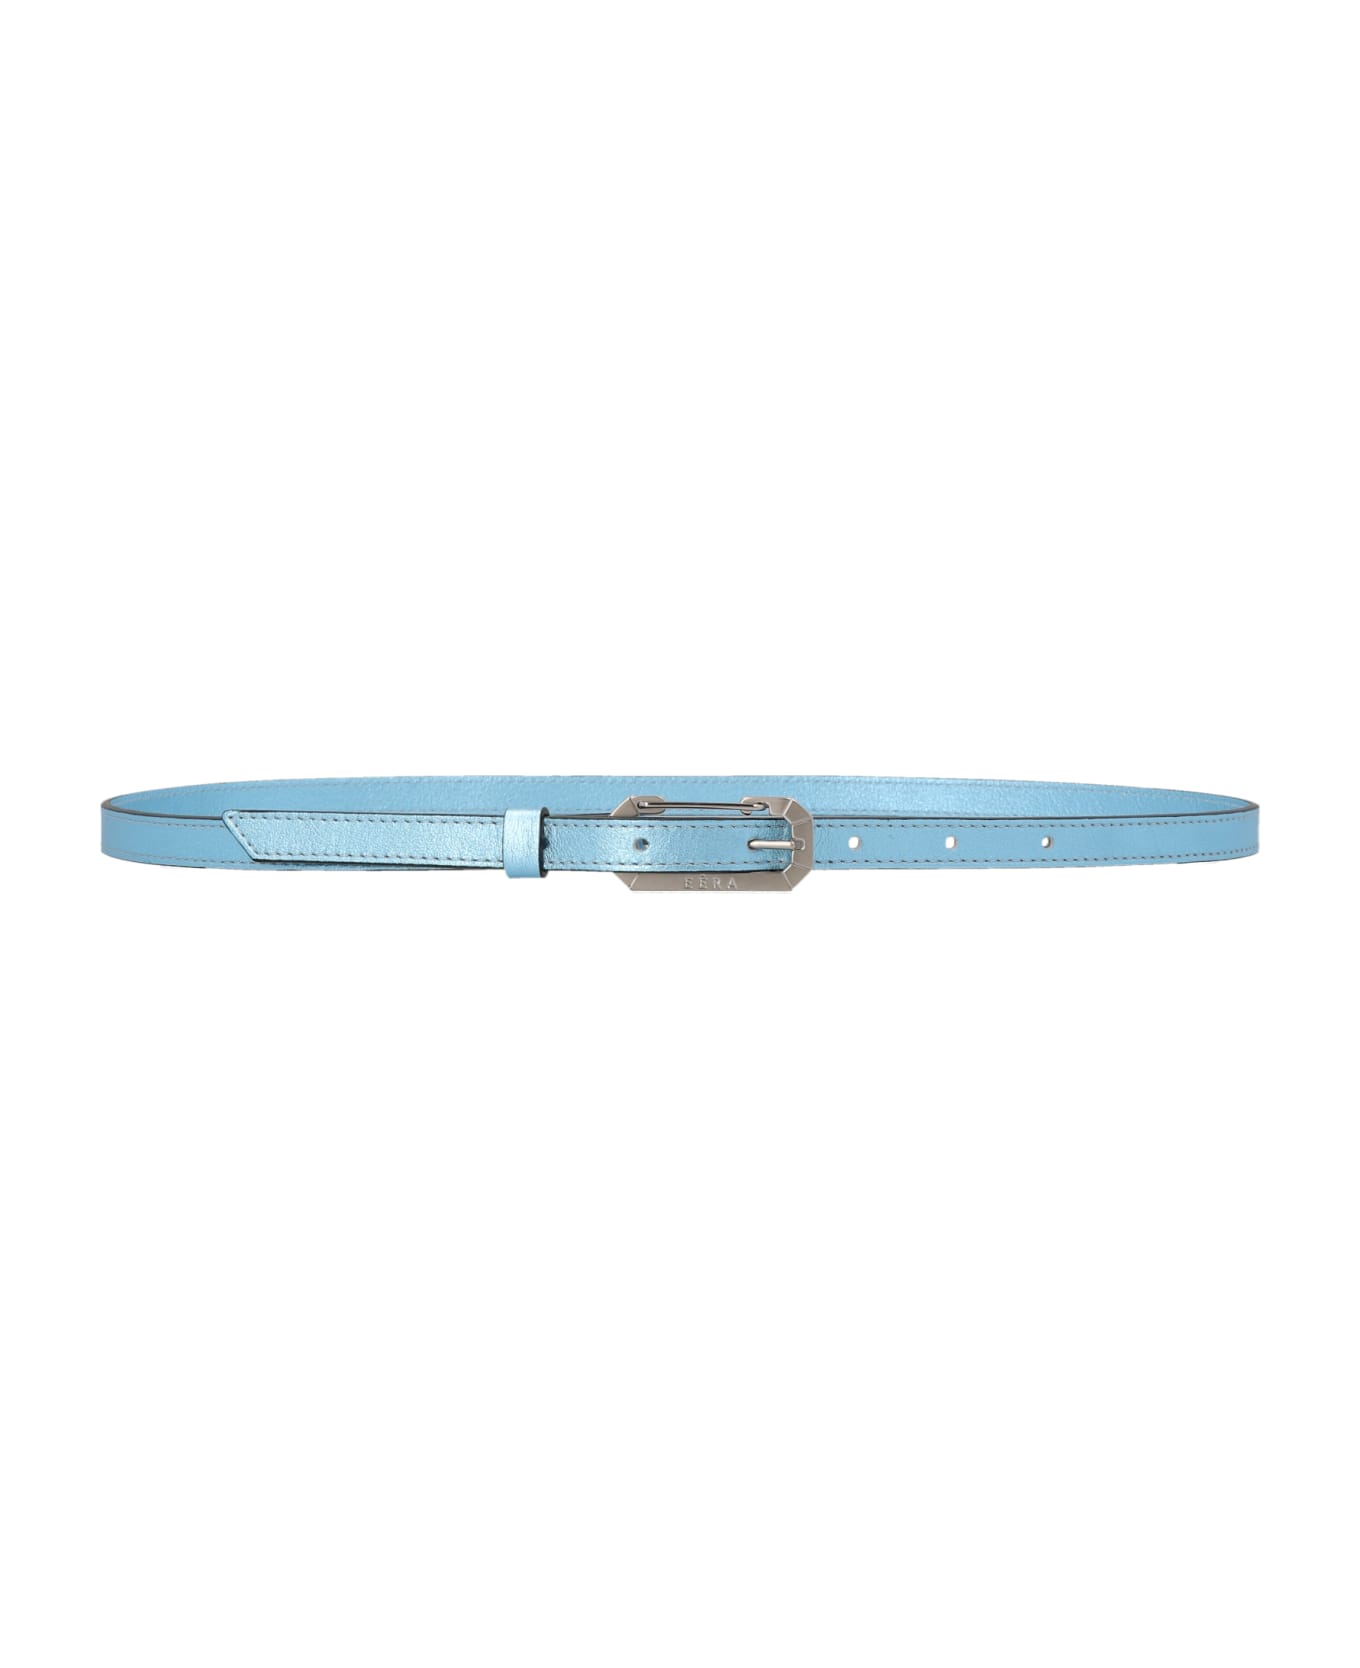 EÉRA Foil Leather Belt - Light Blue ベルト